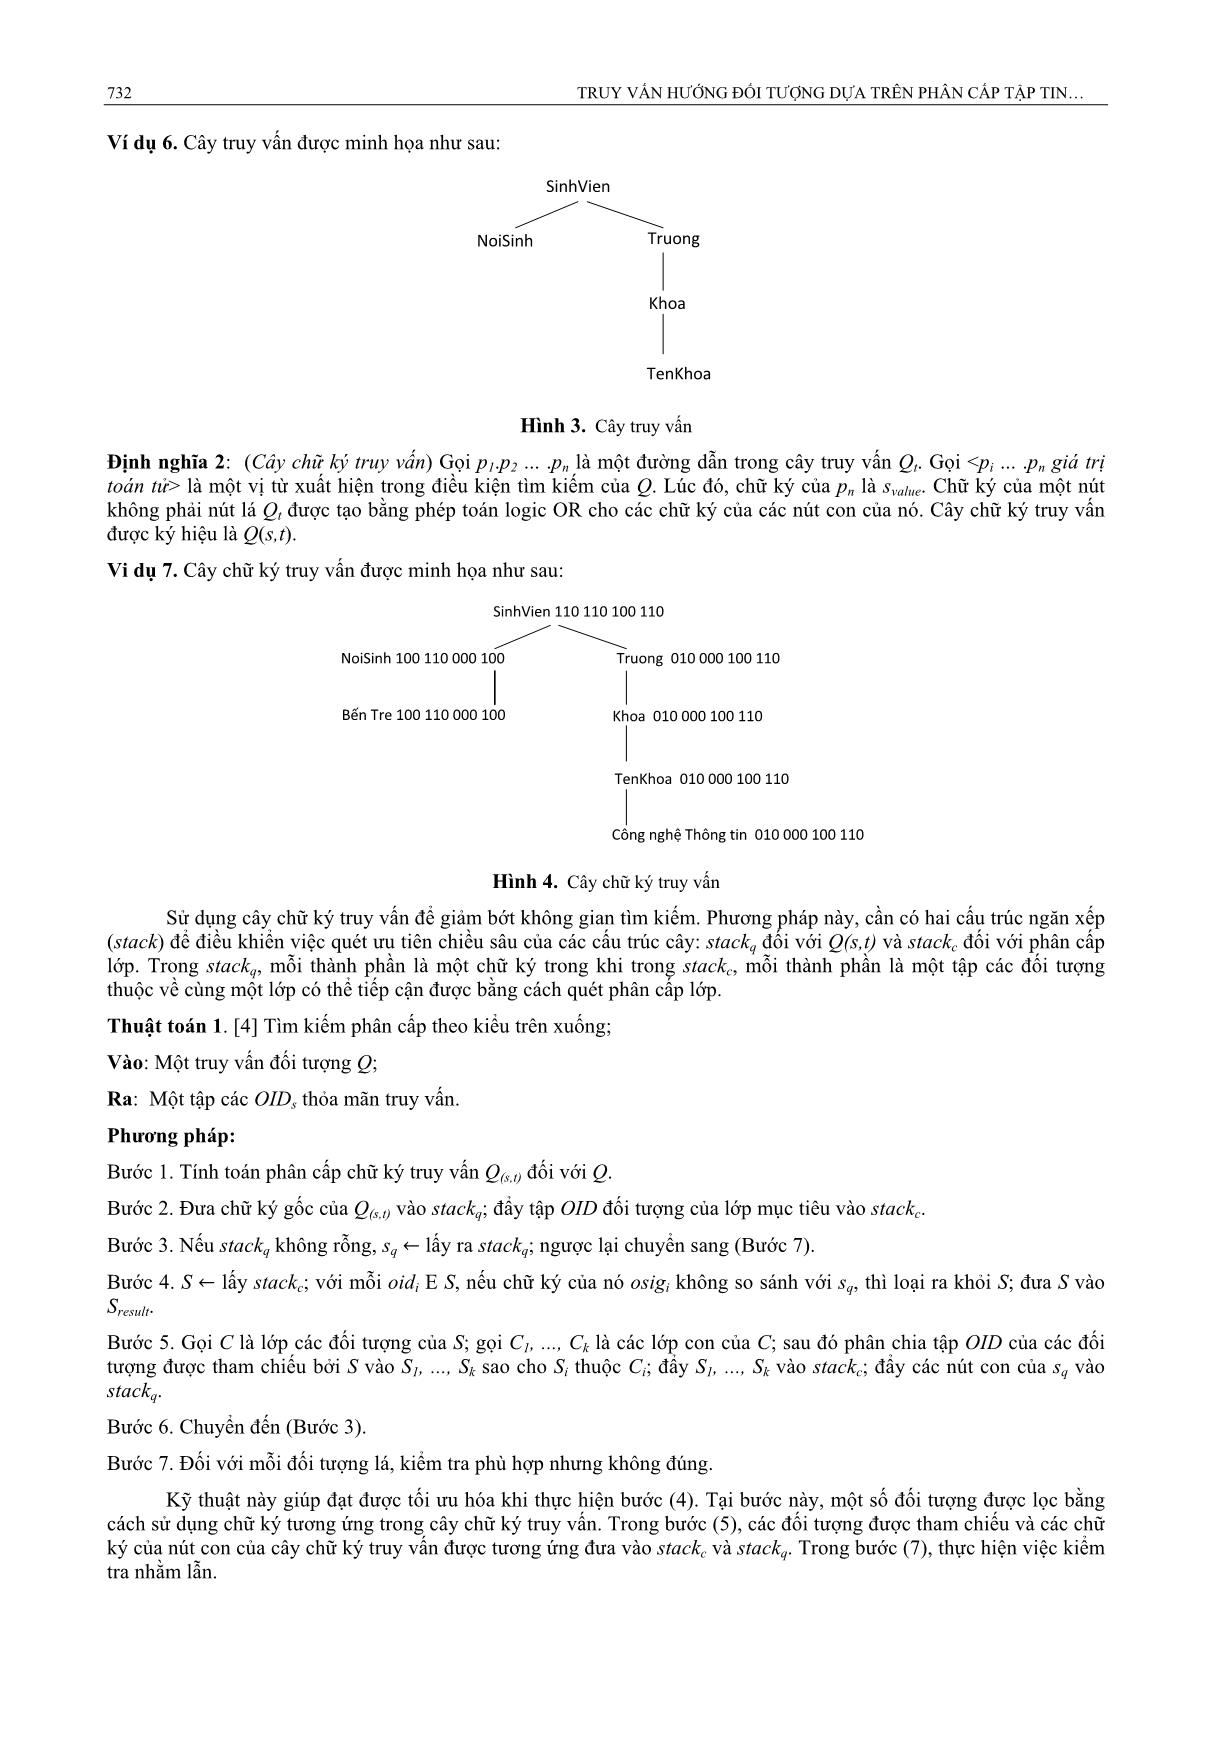 Truy vấn hướng đối tượng dựa trên phân cấp tập tin chữ ký và cây SD-Tree trang 4